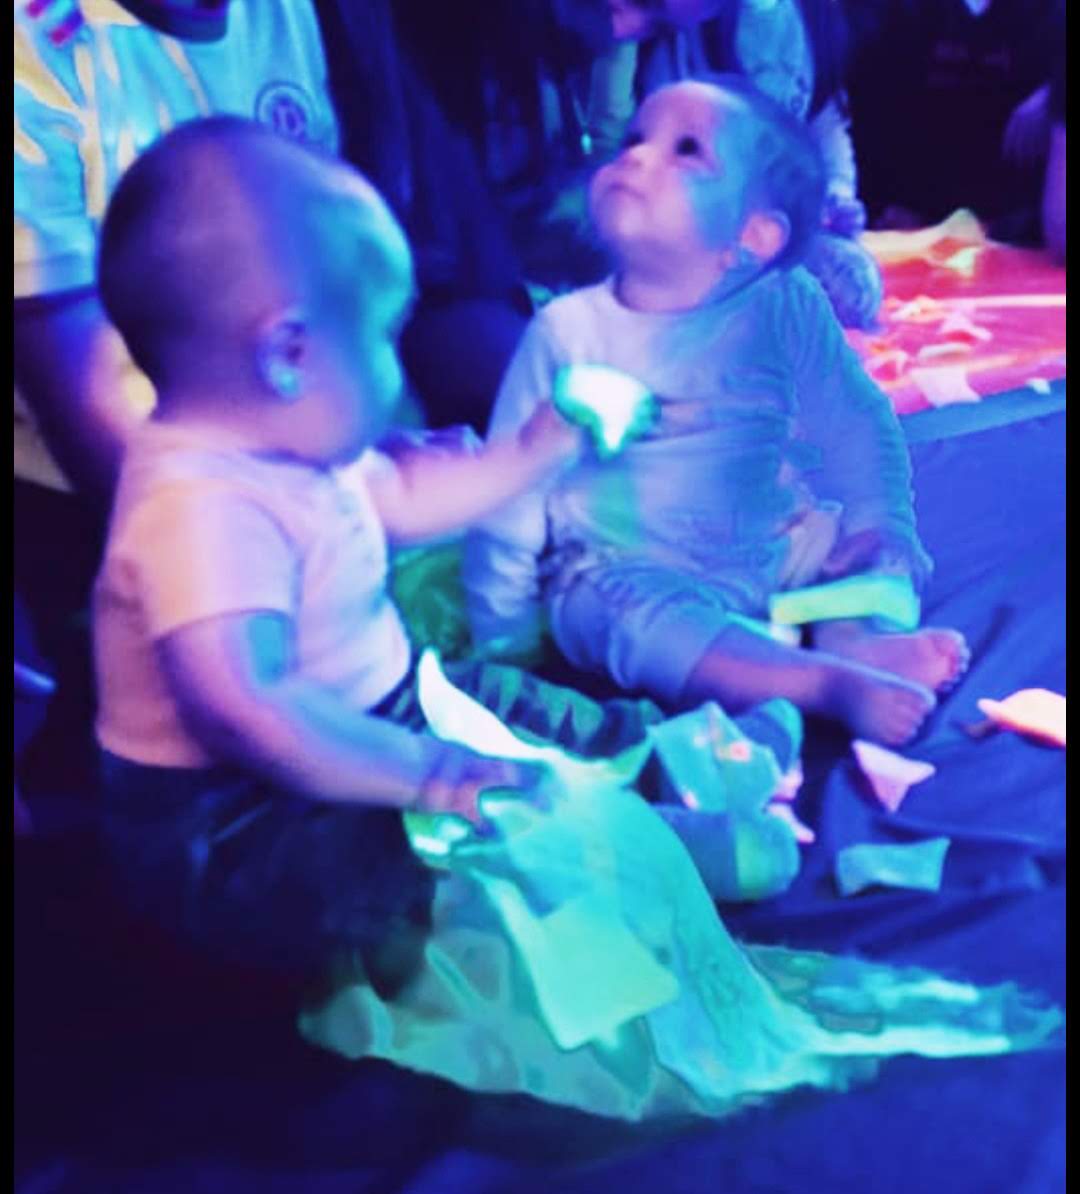 dos bebés jugando con colores neón en un cuarto con luz azul